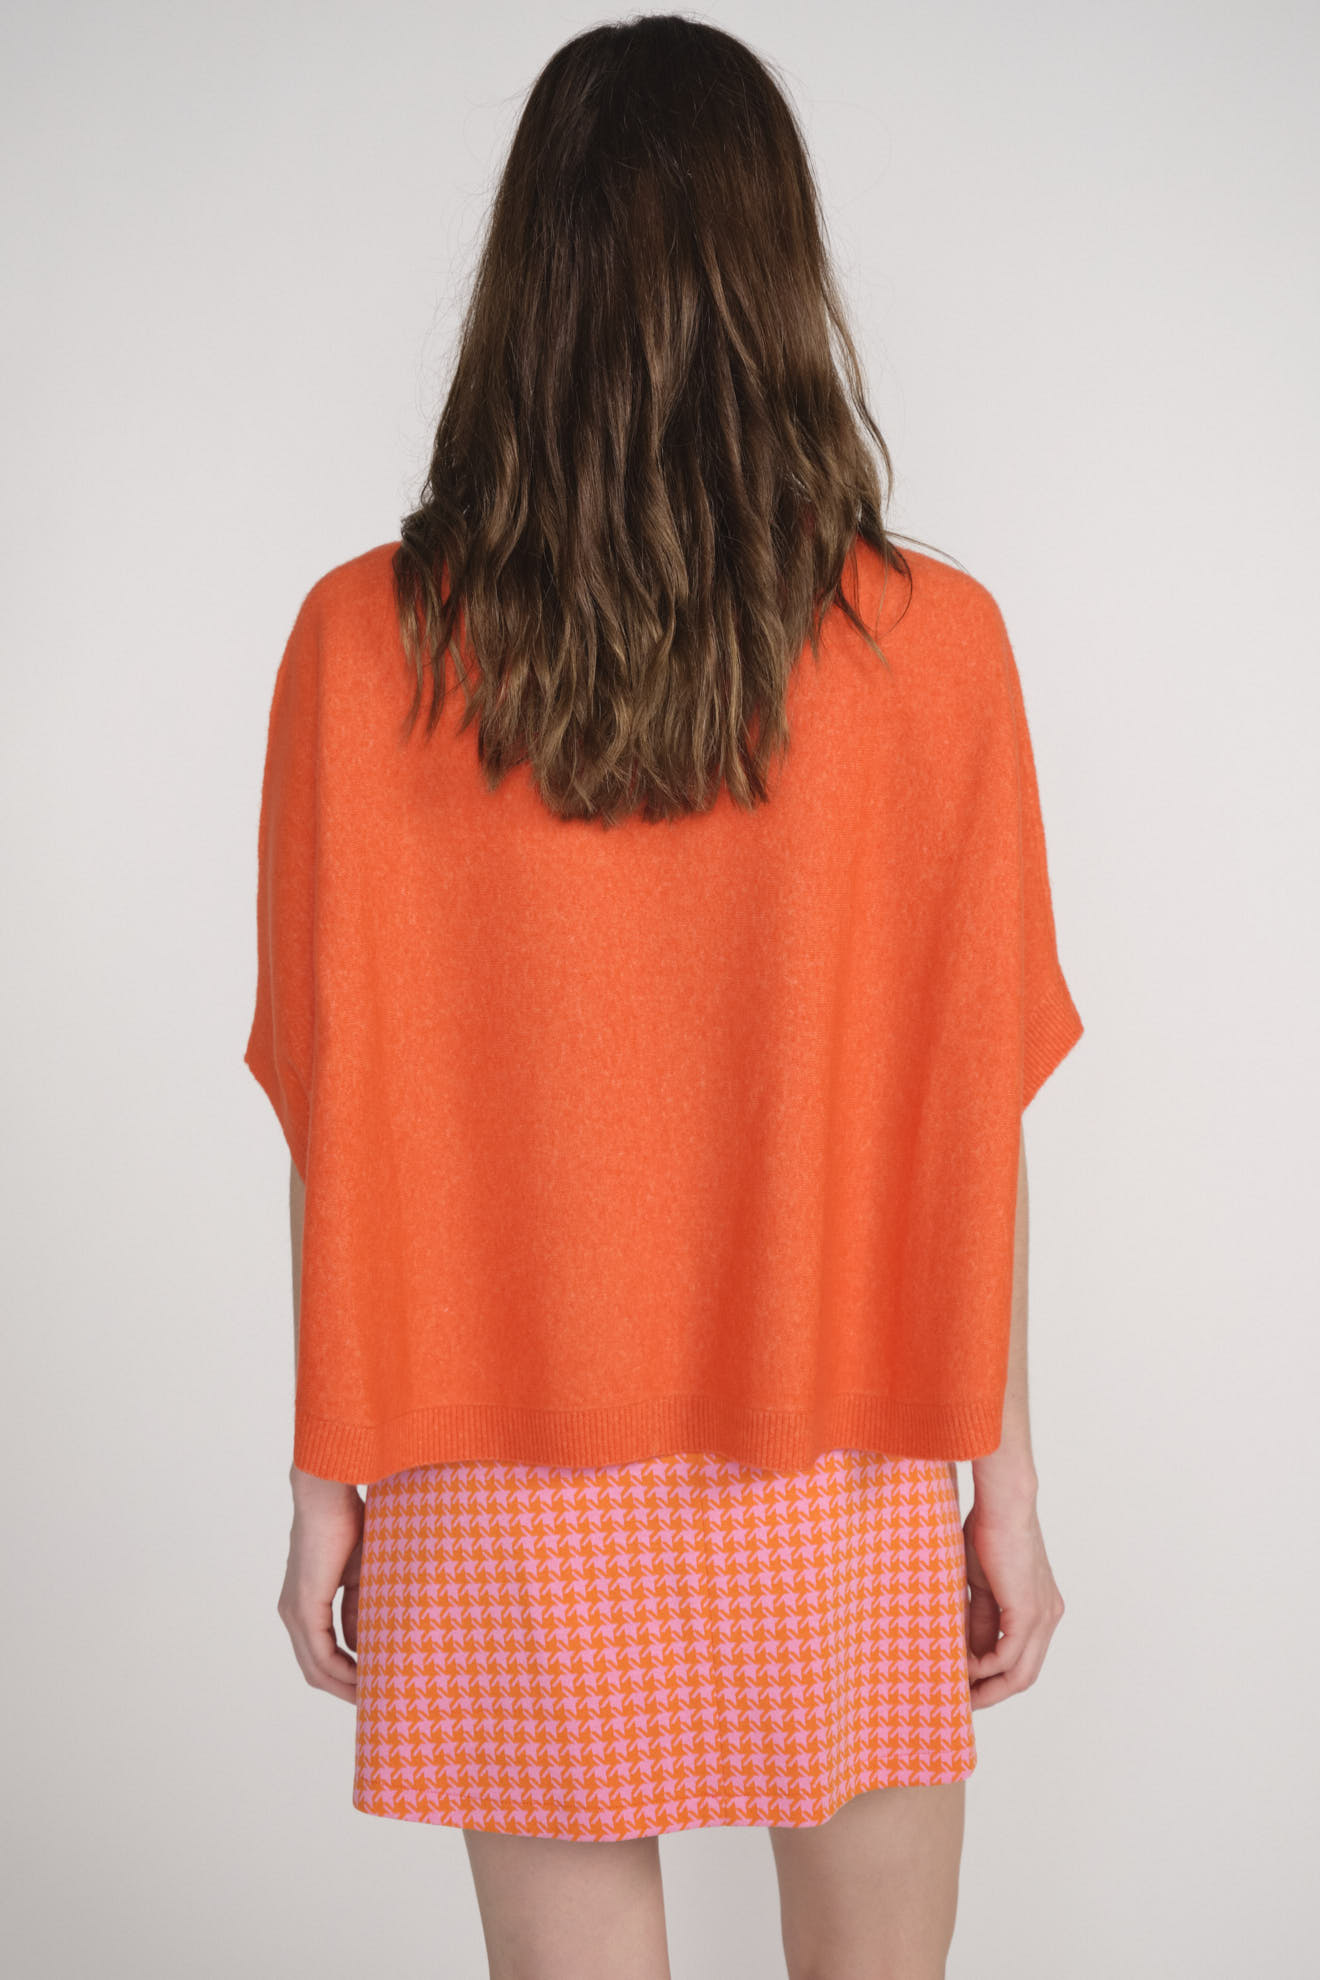 Darby - Maglia a mantella in cashmere arancione M